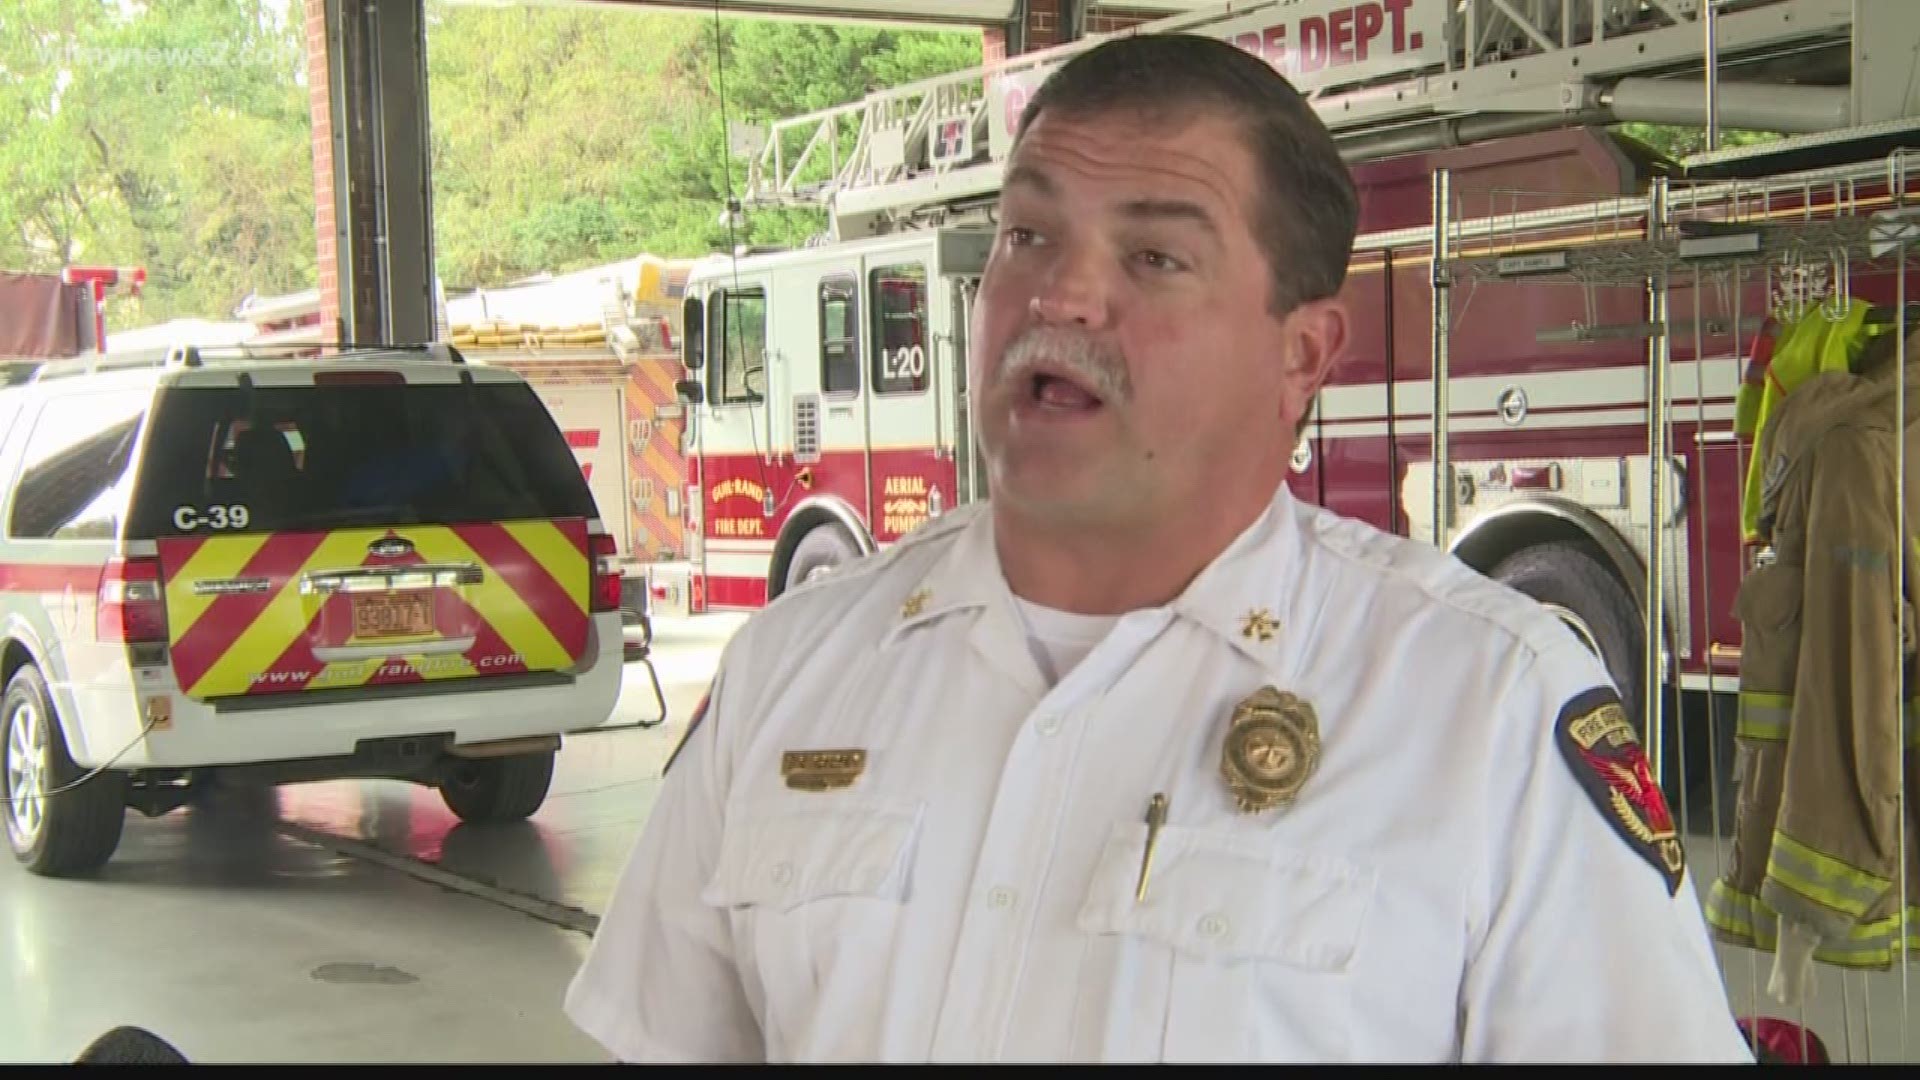 Firefighter emt jobs in north carolina